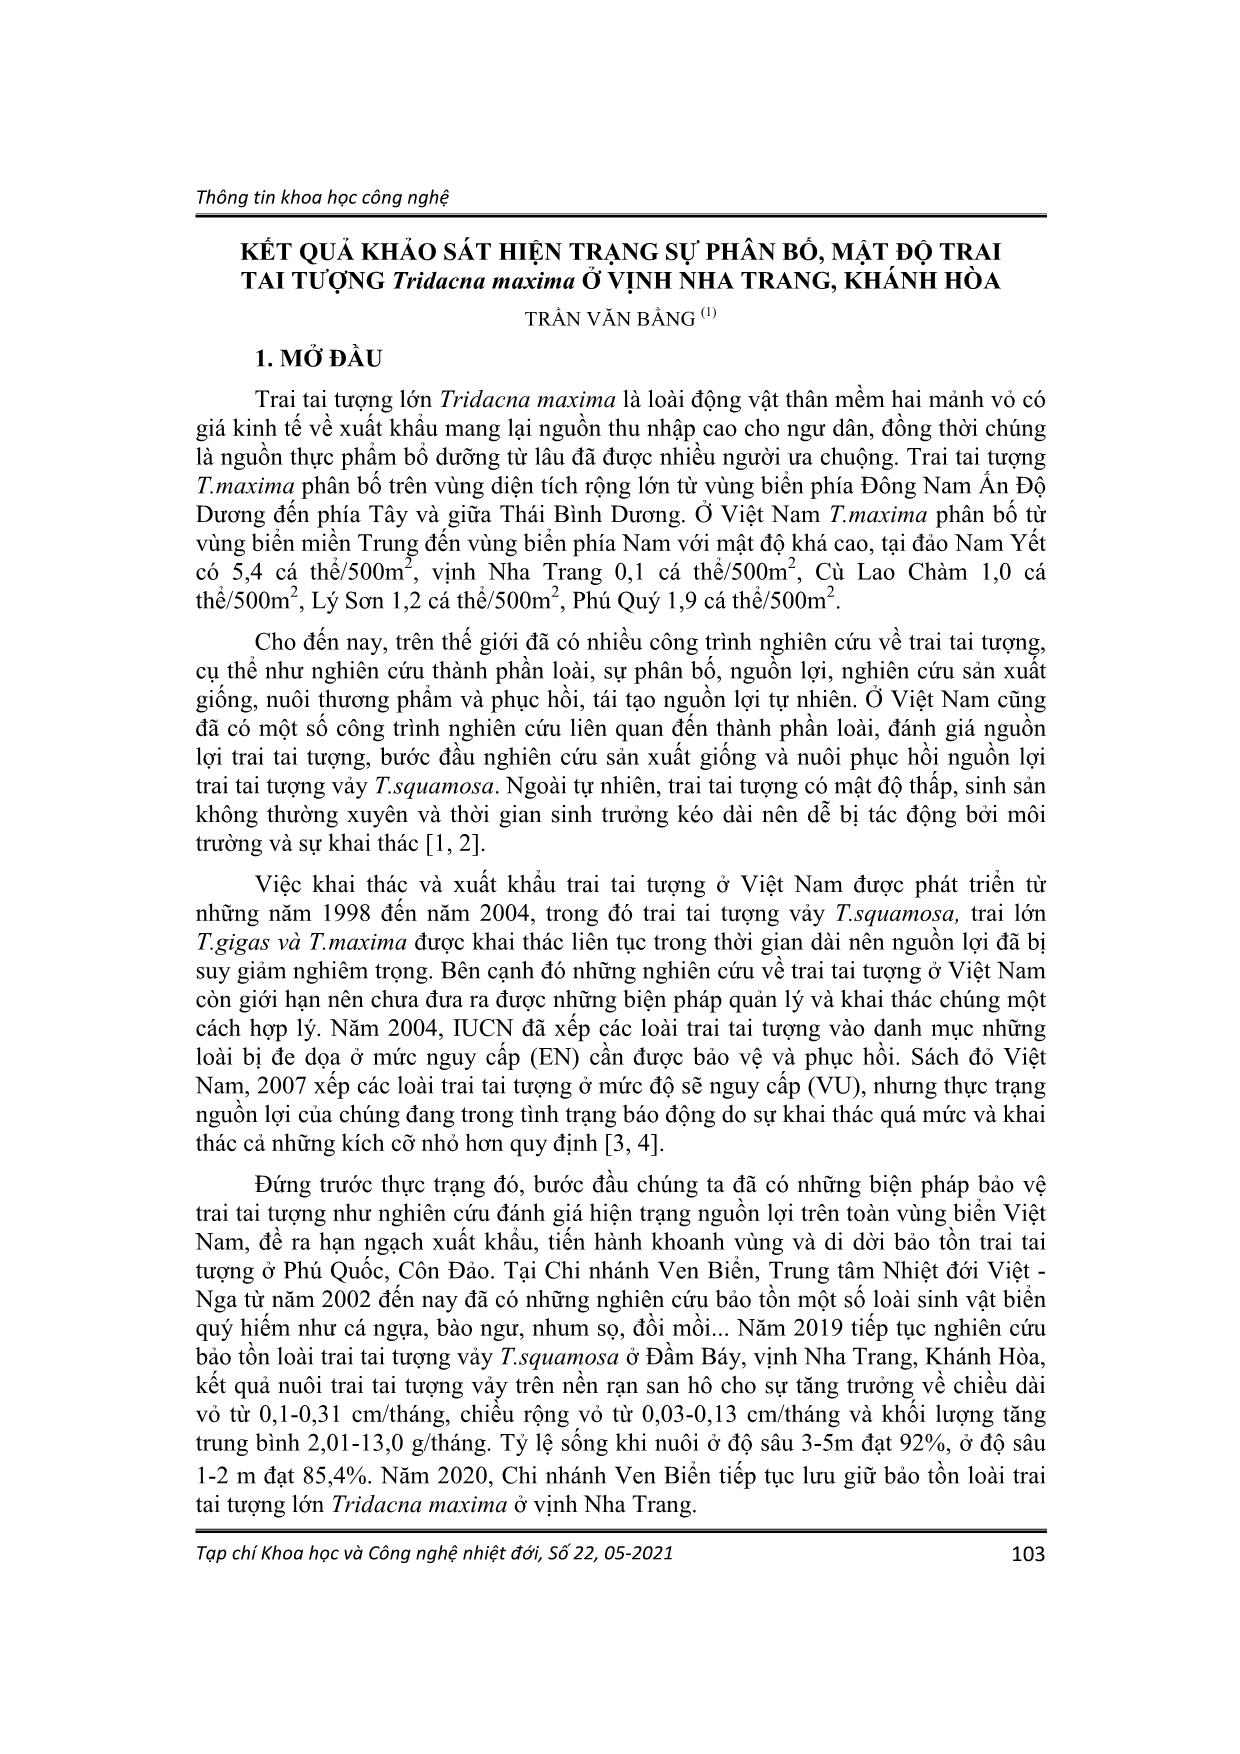 Kết quả khảo sát hiện trạng sự phân bố, mật độ trai tai tượng Tridacna maxima ở vịnh Nha Trang, Khánh Hòa trang 1